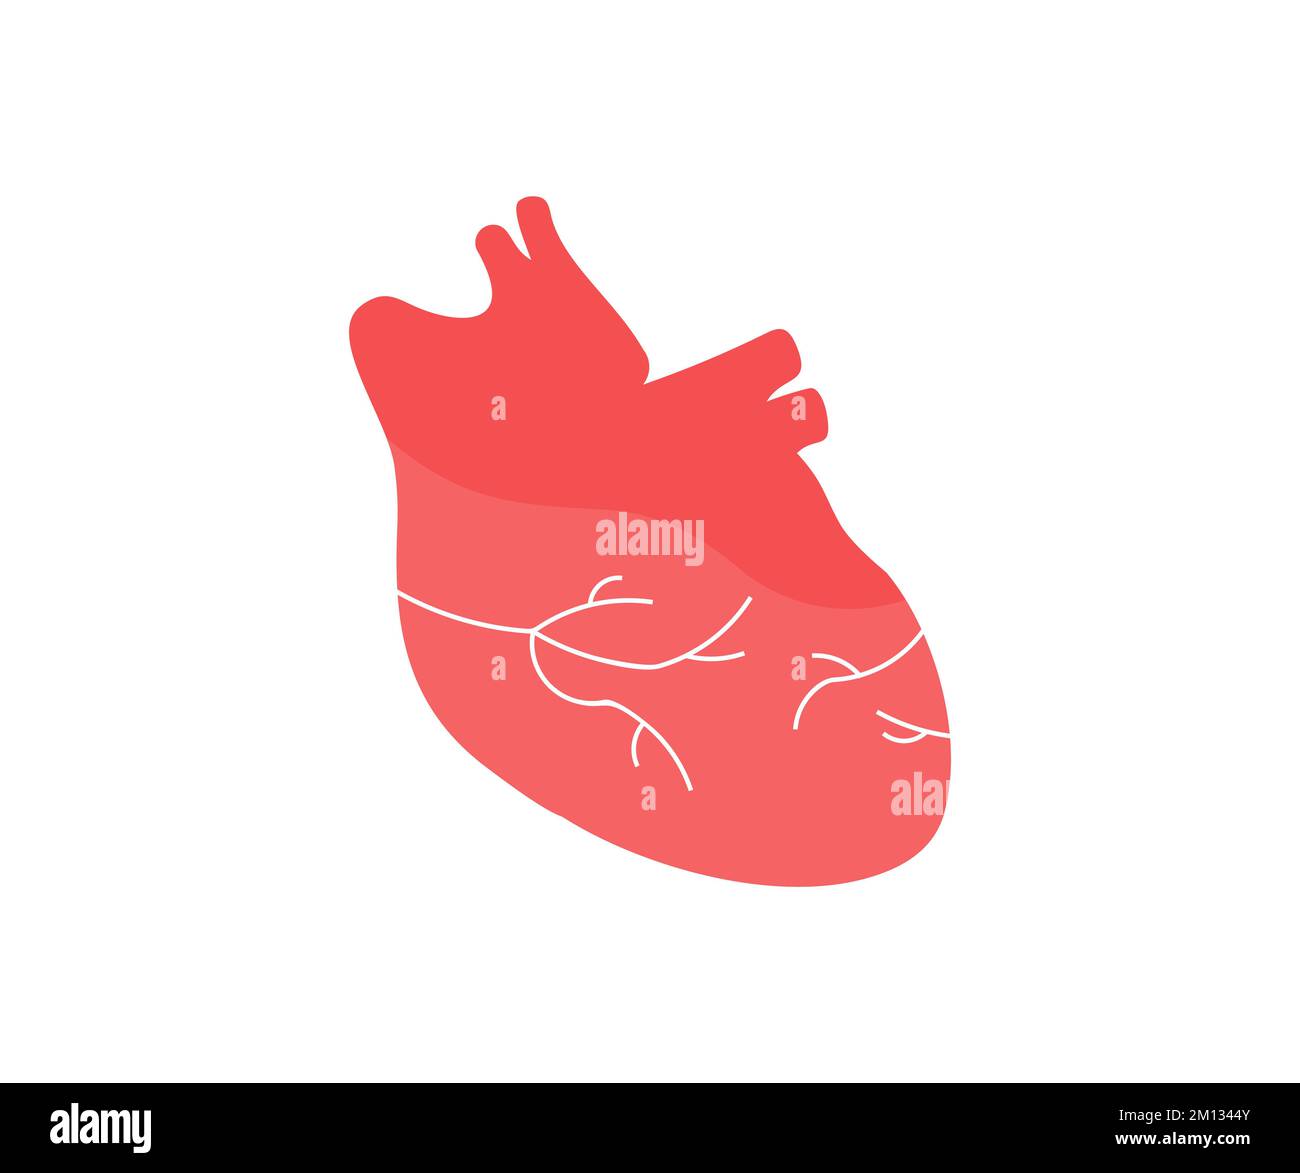 Organe cardiaque humain réaliste avec artères et logo de l'aorte. Silhouette anatomique du cœur humain. Concept de médecine saine, conception de vecteur de cardiologie Illustration de Vecteur